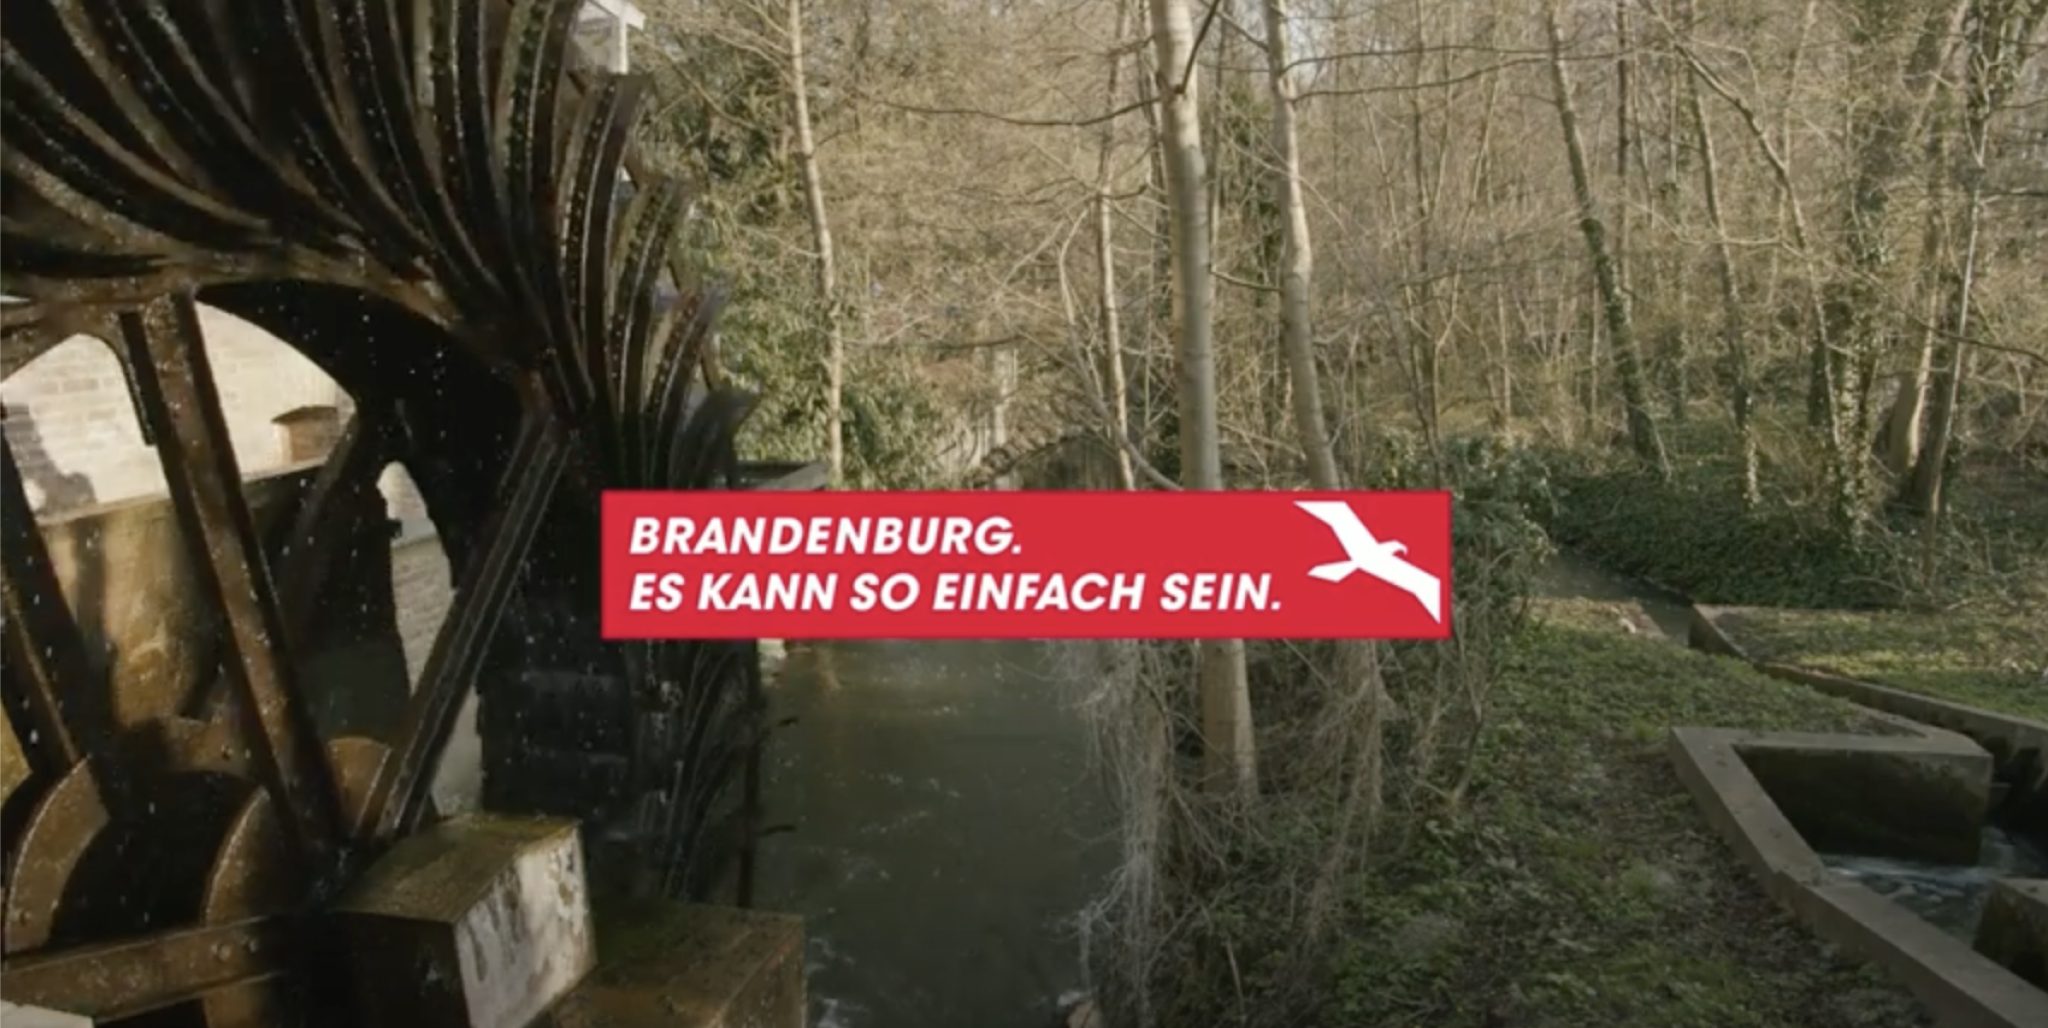 Ein Mülenrad betrieben von einem kleinen Bach. Im Hintergrund ein Wald mit Bäumen ohne Laub. Eine Aufschrift "Brandenburg. Es kann so einfach sein."